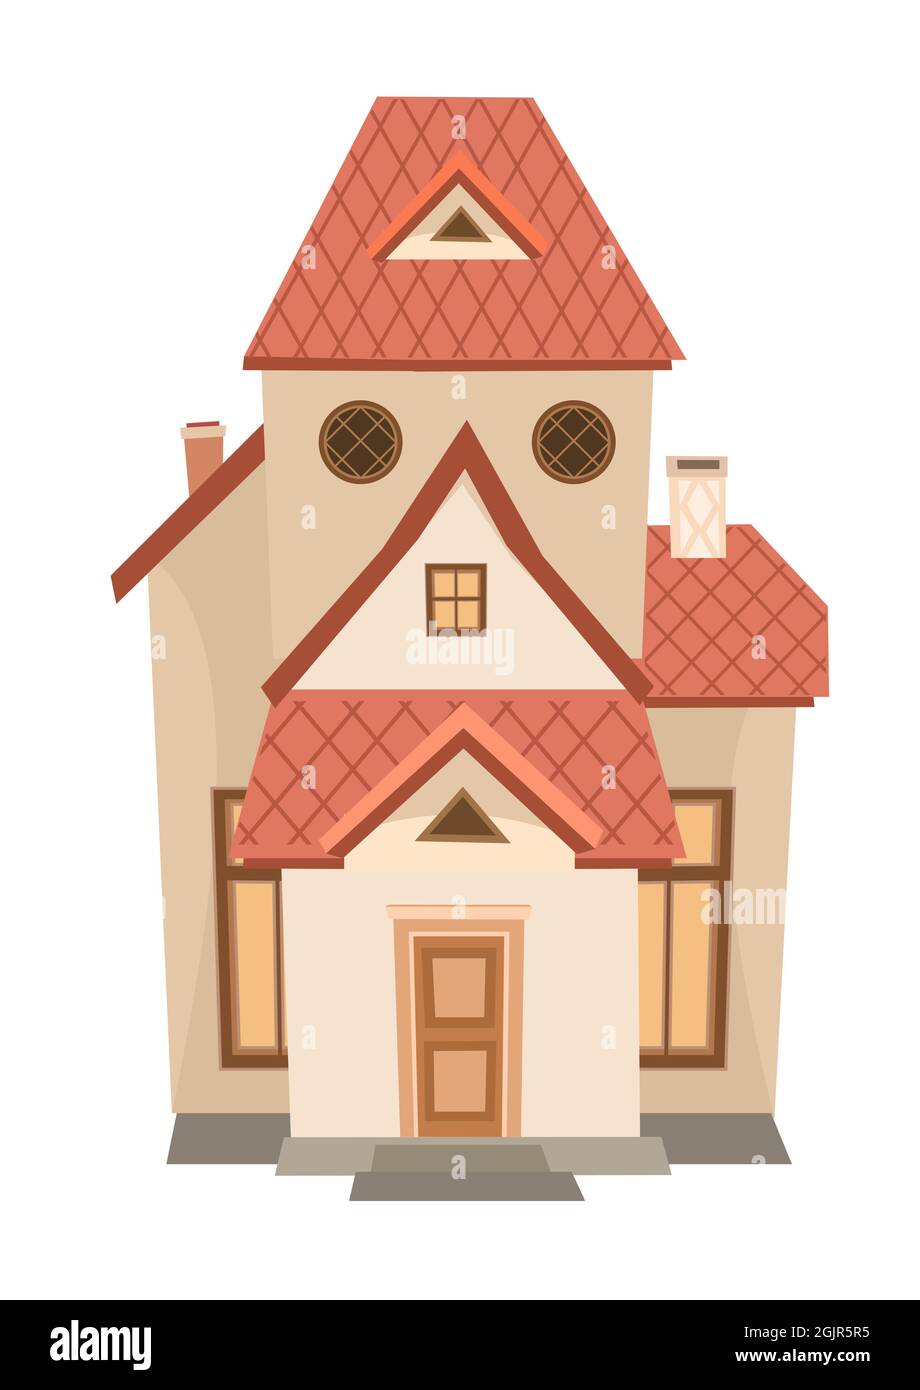 Hohes Cartoon-Haus mit runden Fenstern. Gemütliche, einfache ländliche Wohnung in einem traditionellen europäischen Stil. Süßes Zuhause. Isoliert auf weißem Hintergrund. Vektor Stock Vektor